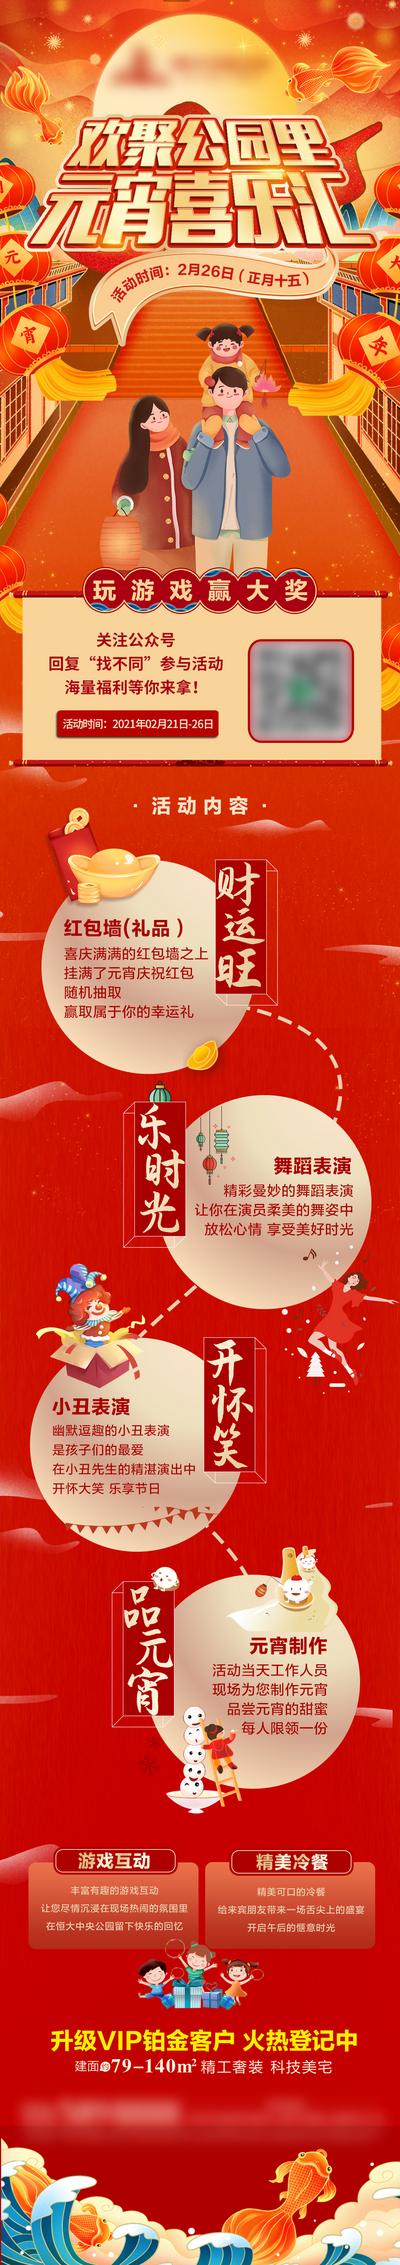 南门网 海报 长图 房地产 中国传统节日 元宵节 活动 流程 红金